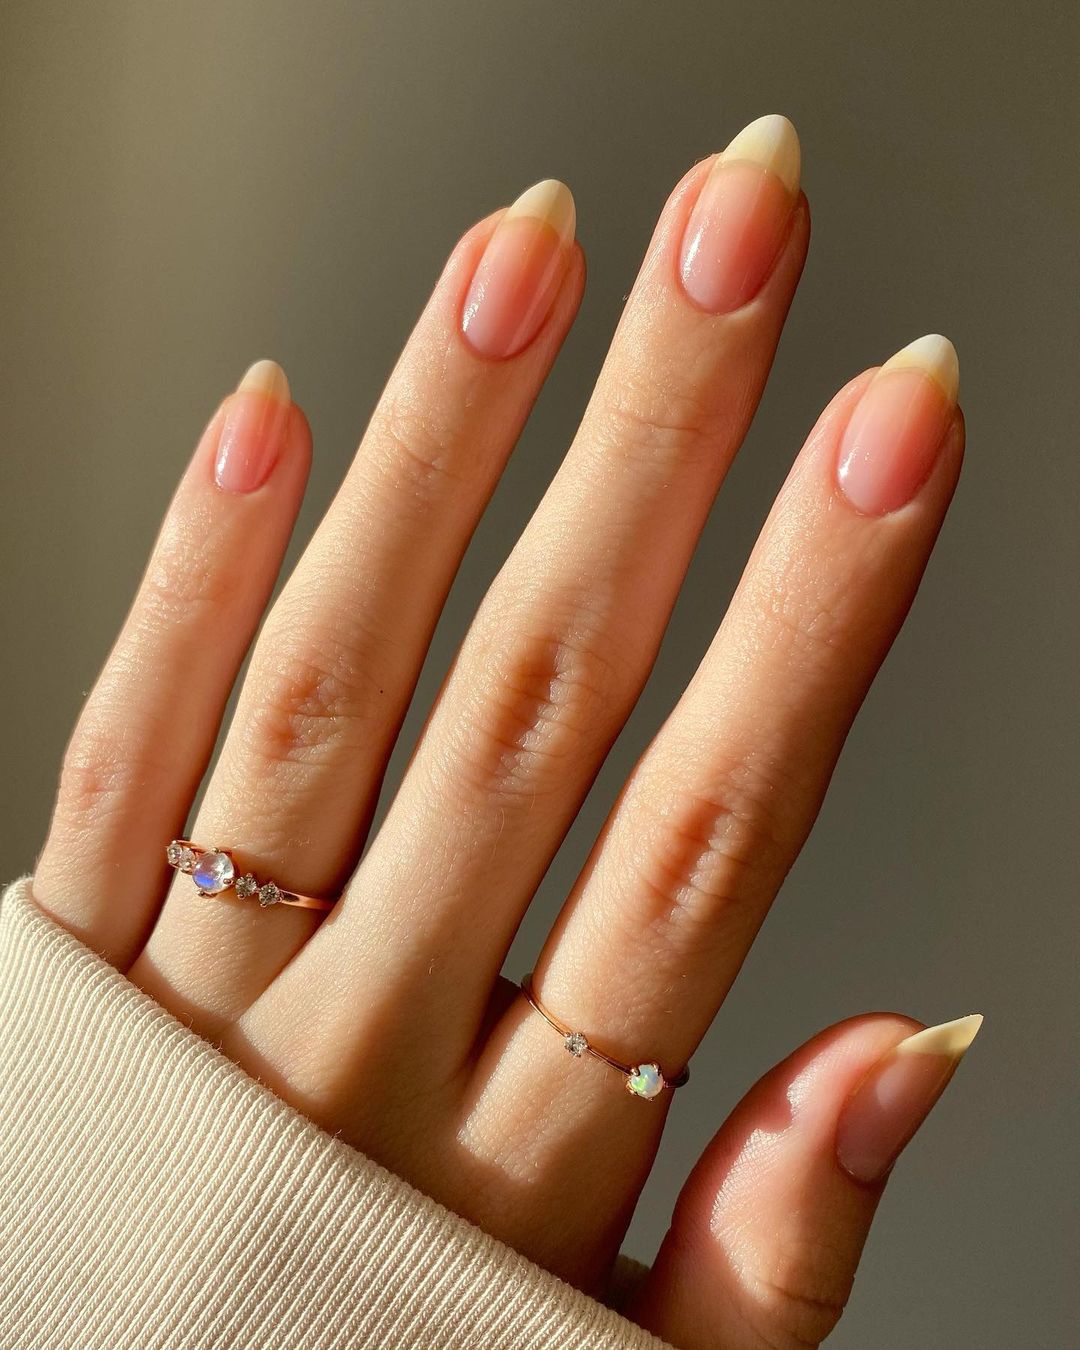 Почему на ногтях появляются белые полоски: причины и способы лечения